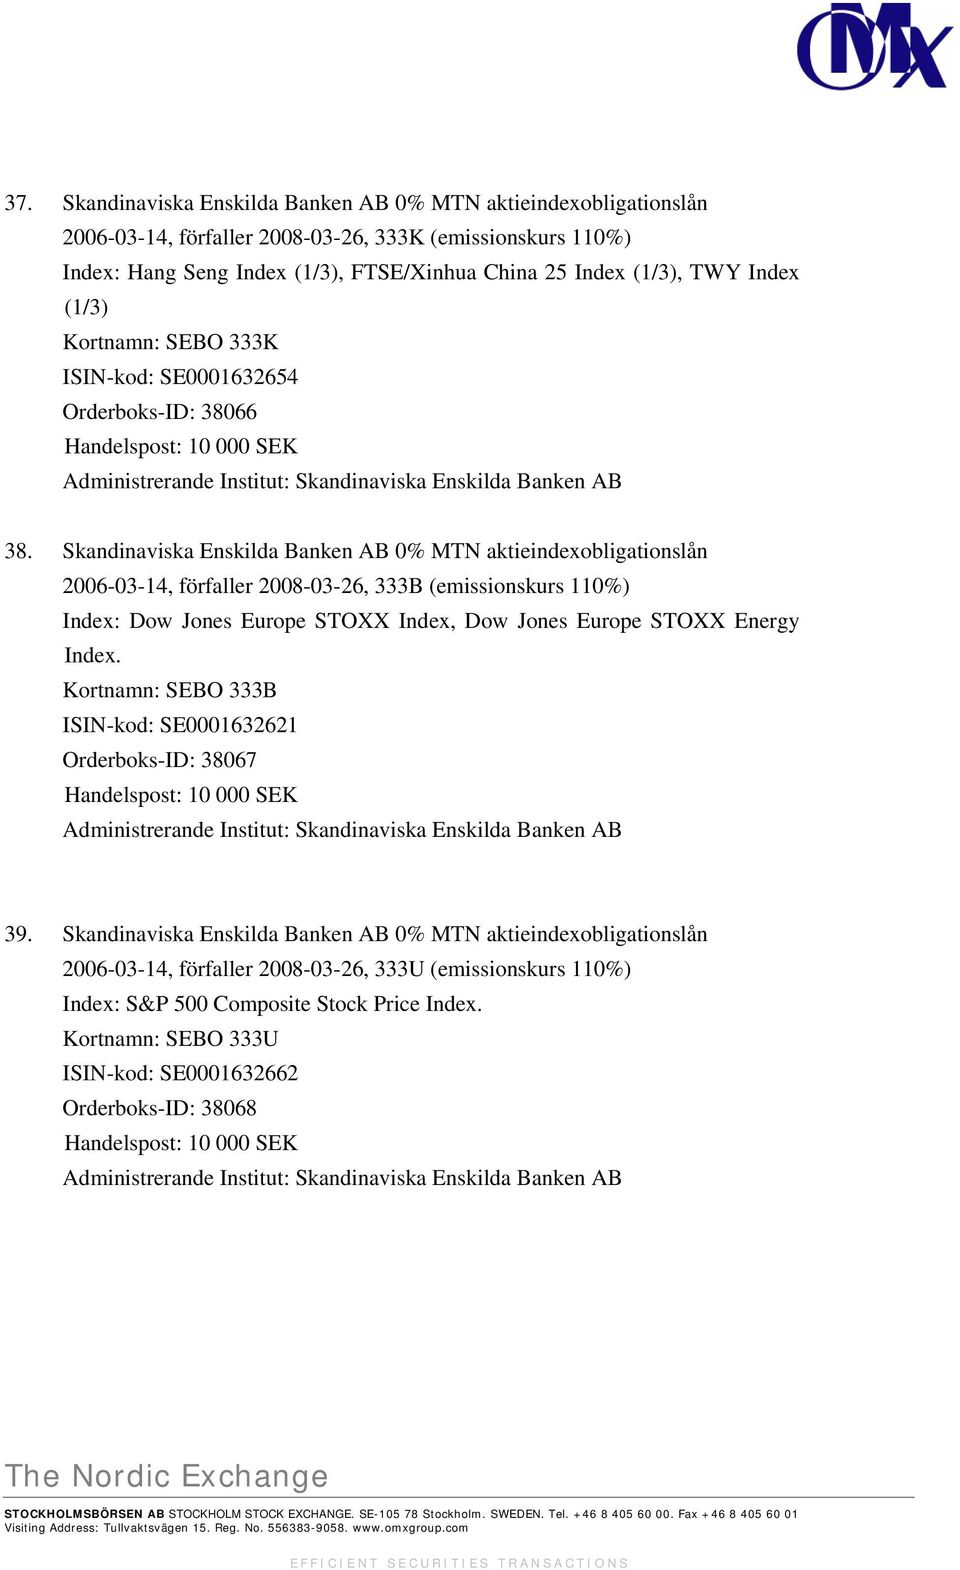 Skandinaviska Enskilda Banken AB 0% MTN aktieindexobligationslån 2006-03-14, förfaller 2008-03-26, 333B (emissionskurs 110%) Index: Dow Jones Europe STOXX Index, Dow Jones Europe STOXX Energy